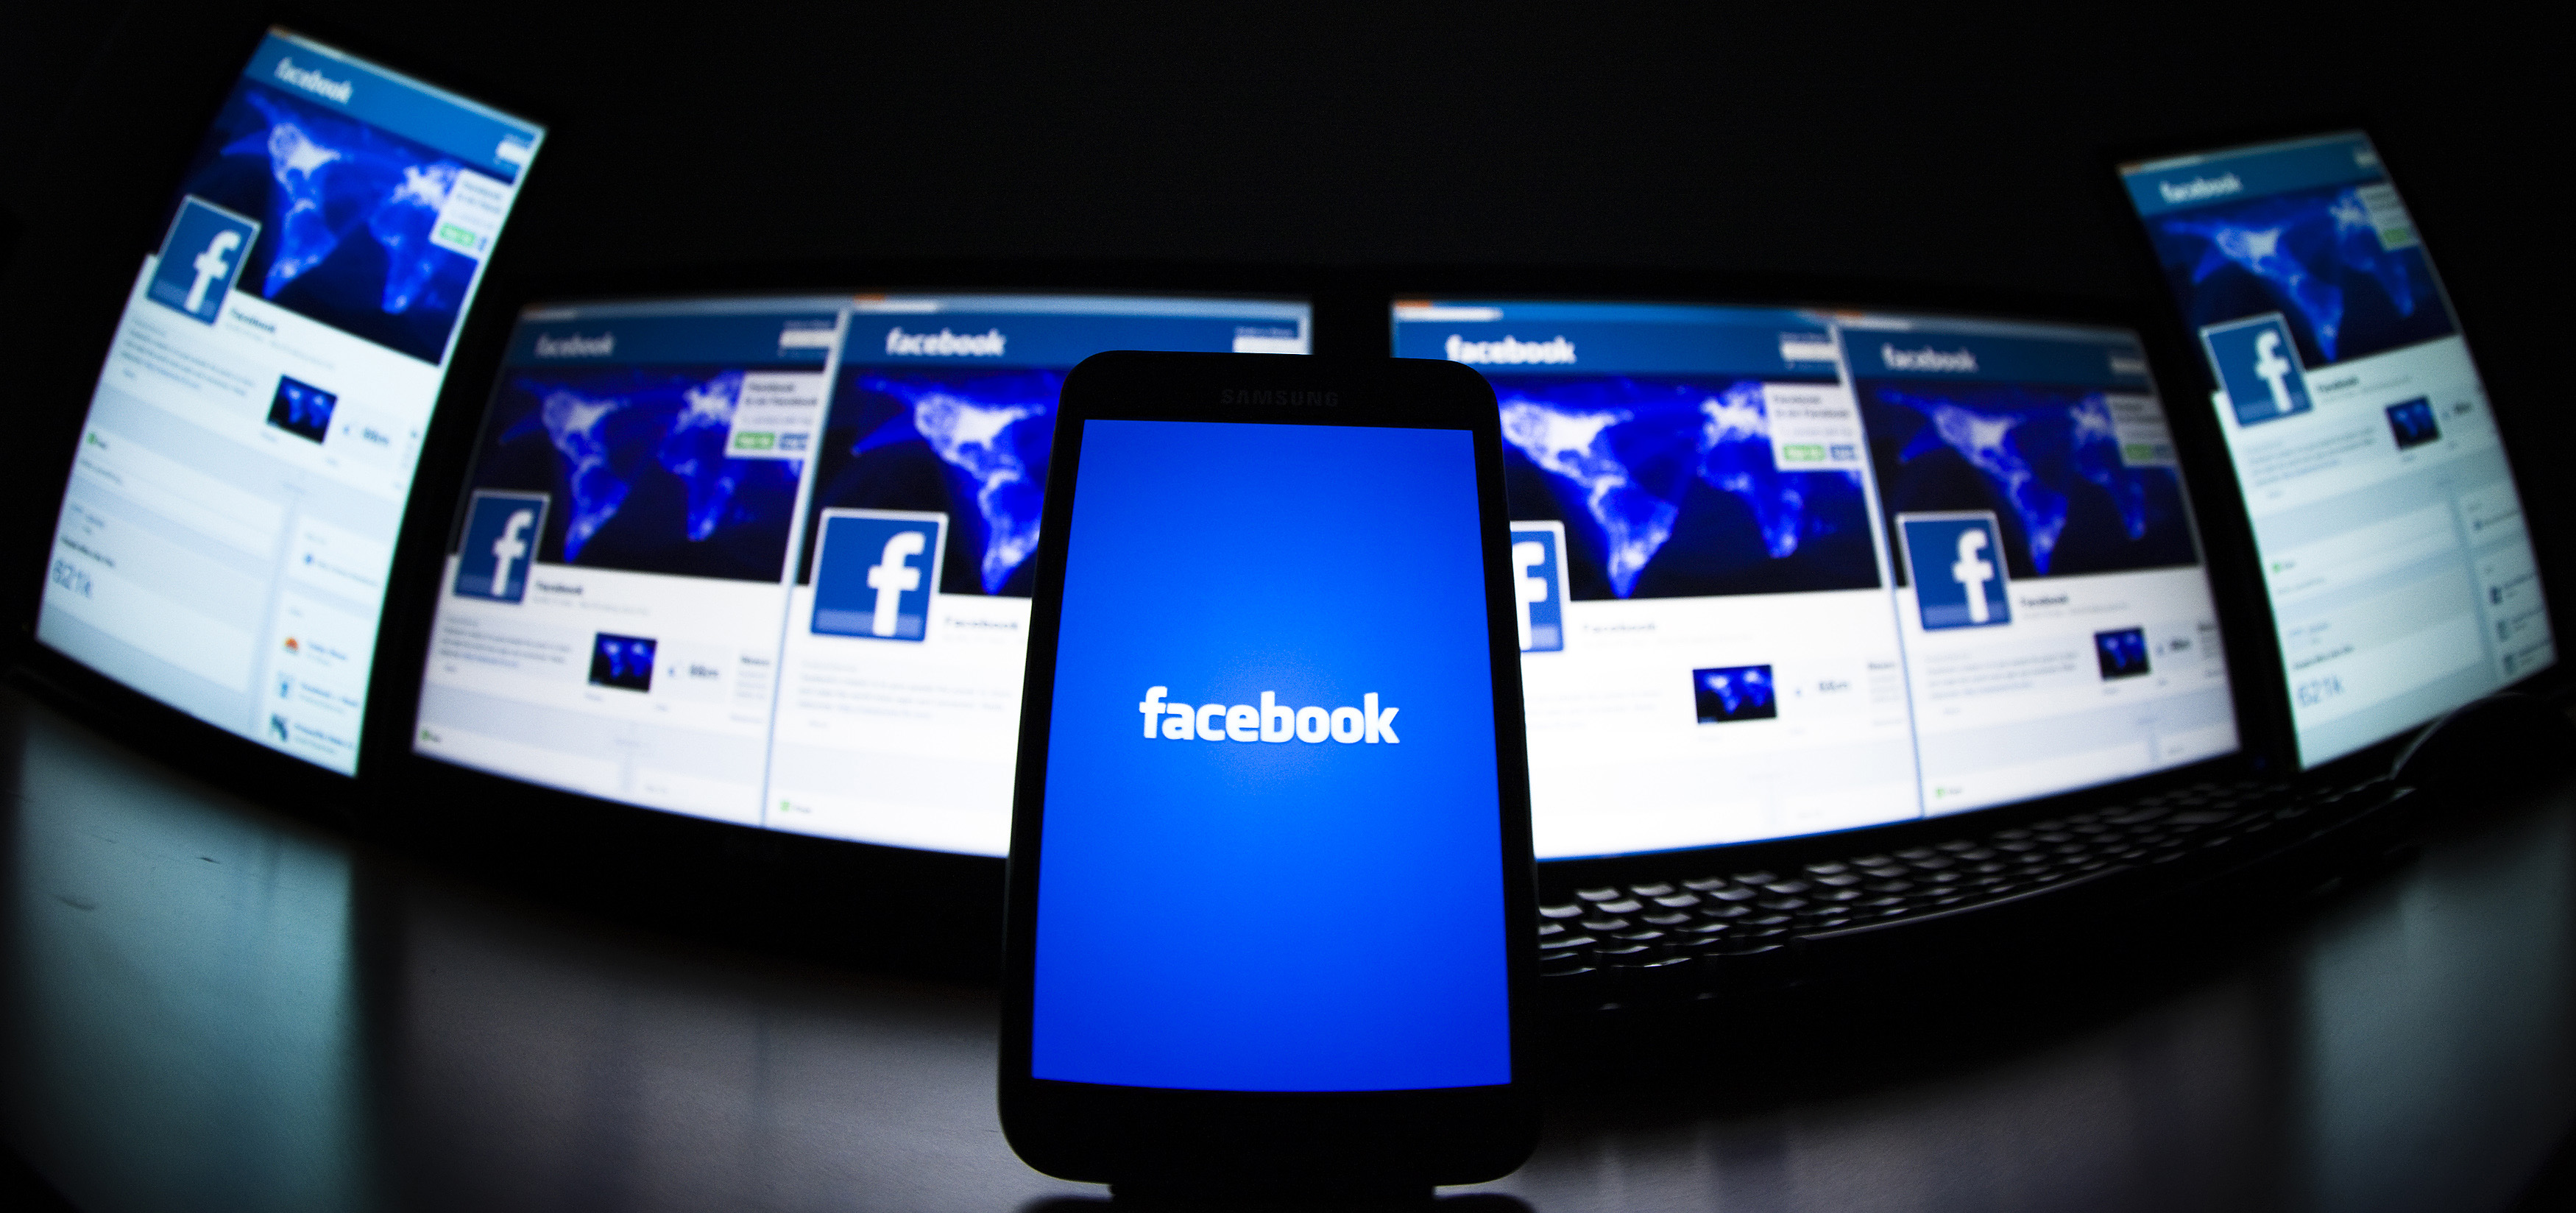 تعليمات جديدة لـ"فيسبوك" تكافح الإرهاب والكراهية والعري